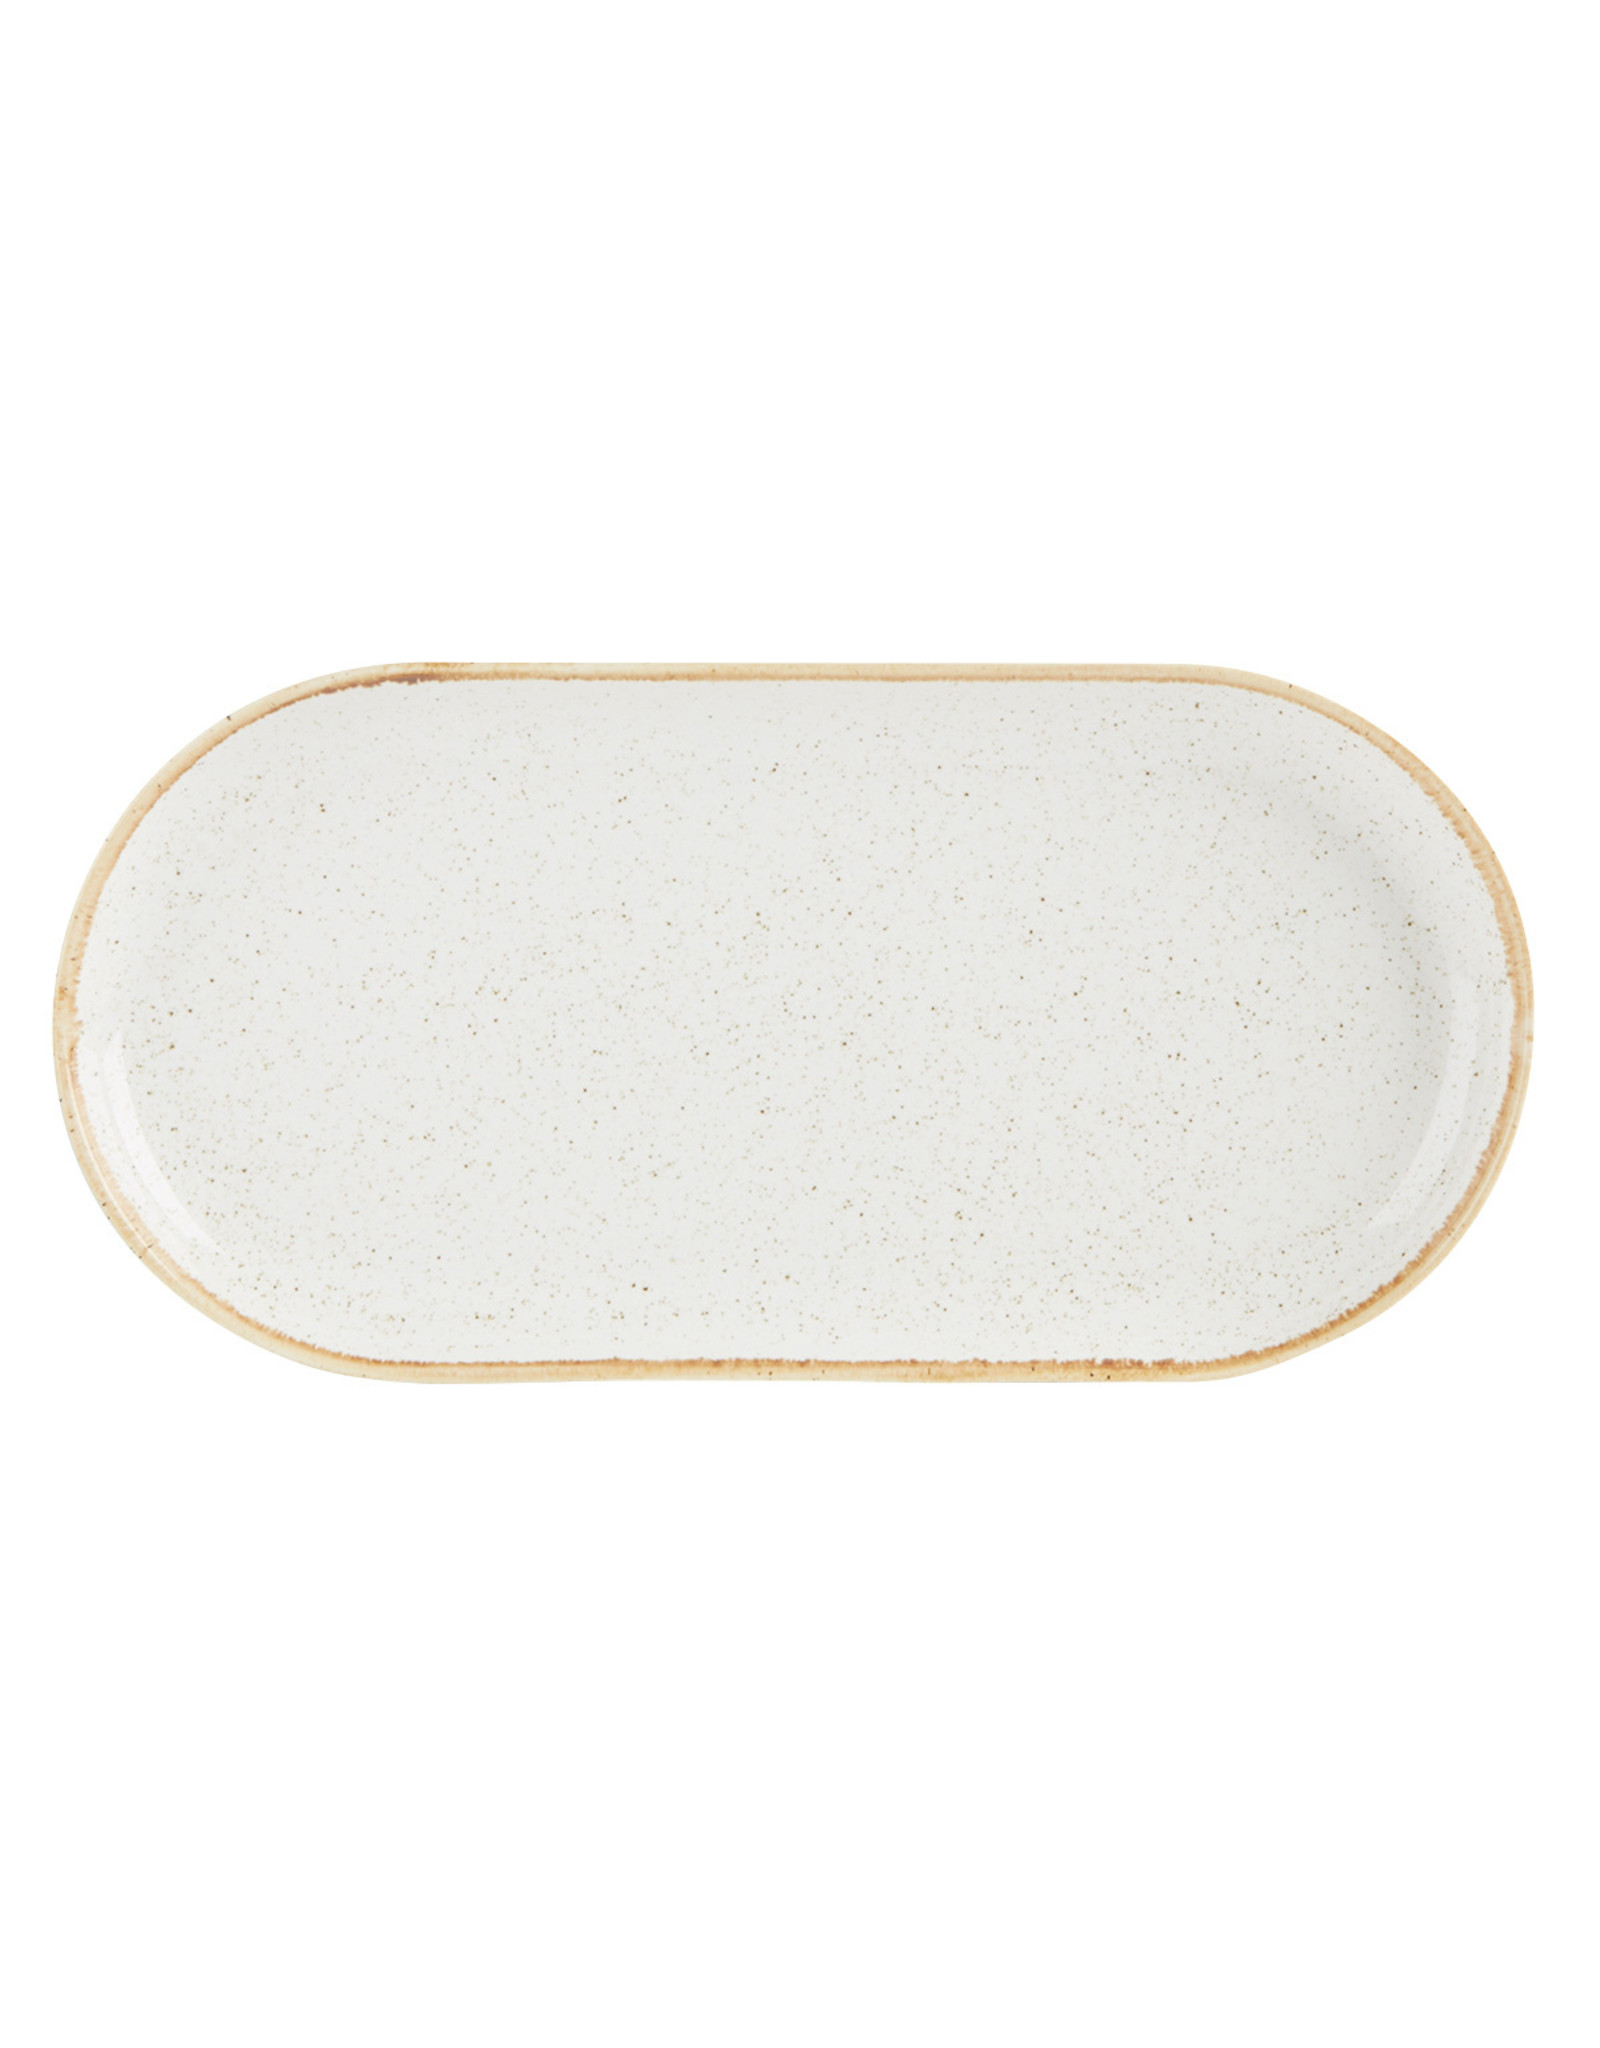 Stylepoint Narrow oval plate 30 cm Seasons Oatmeal